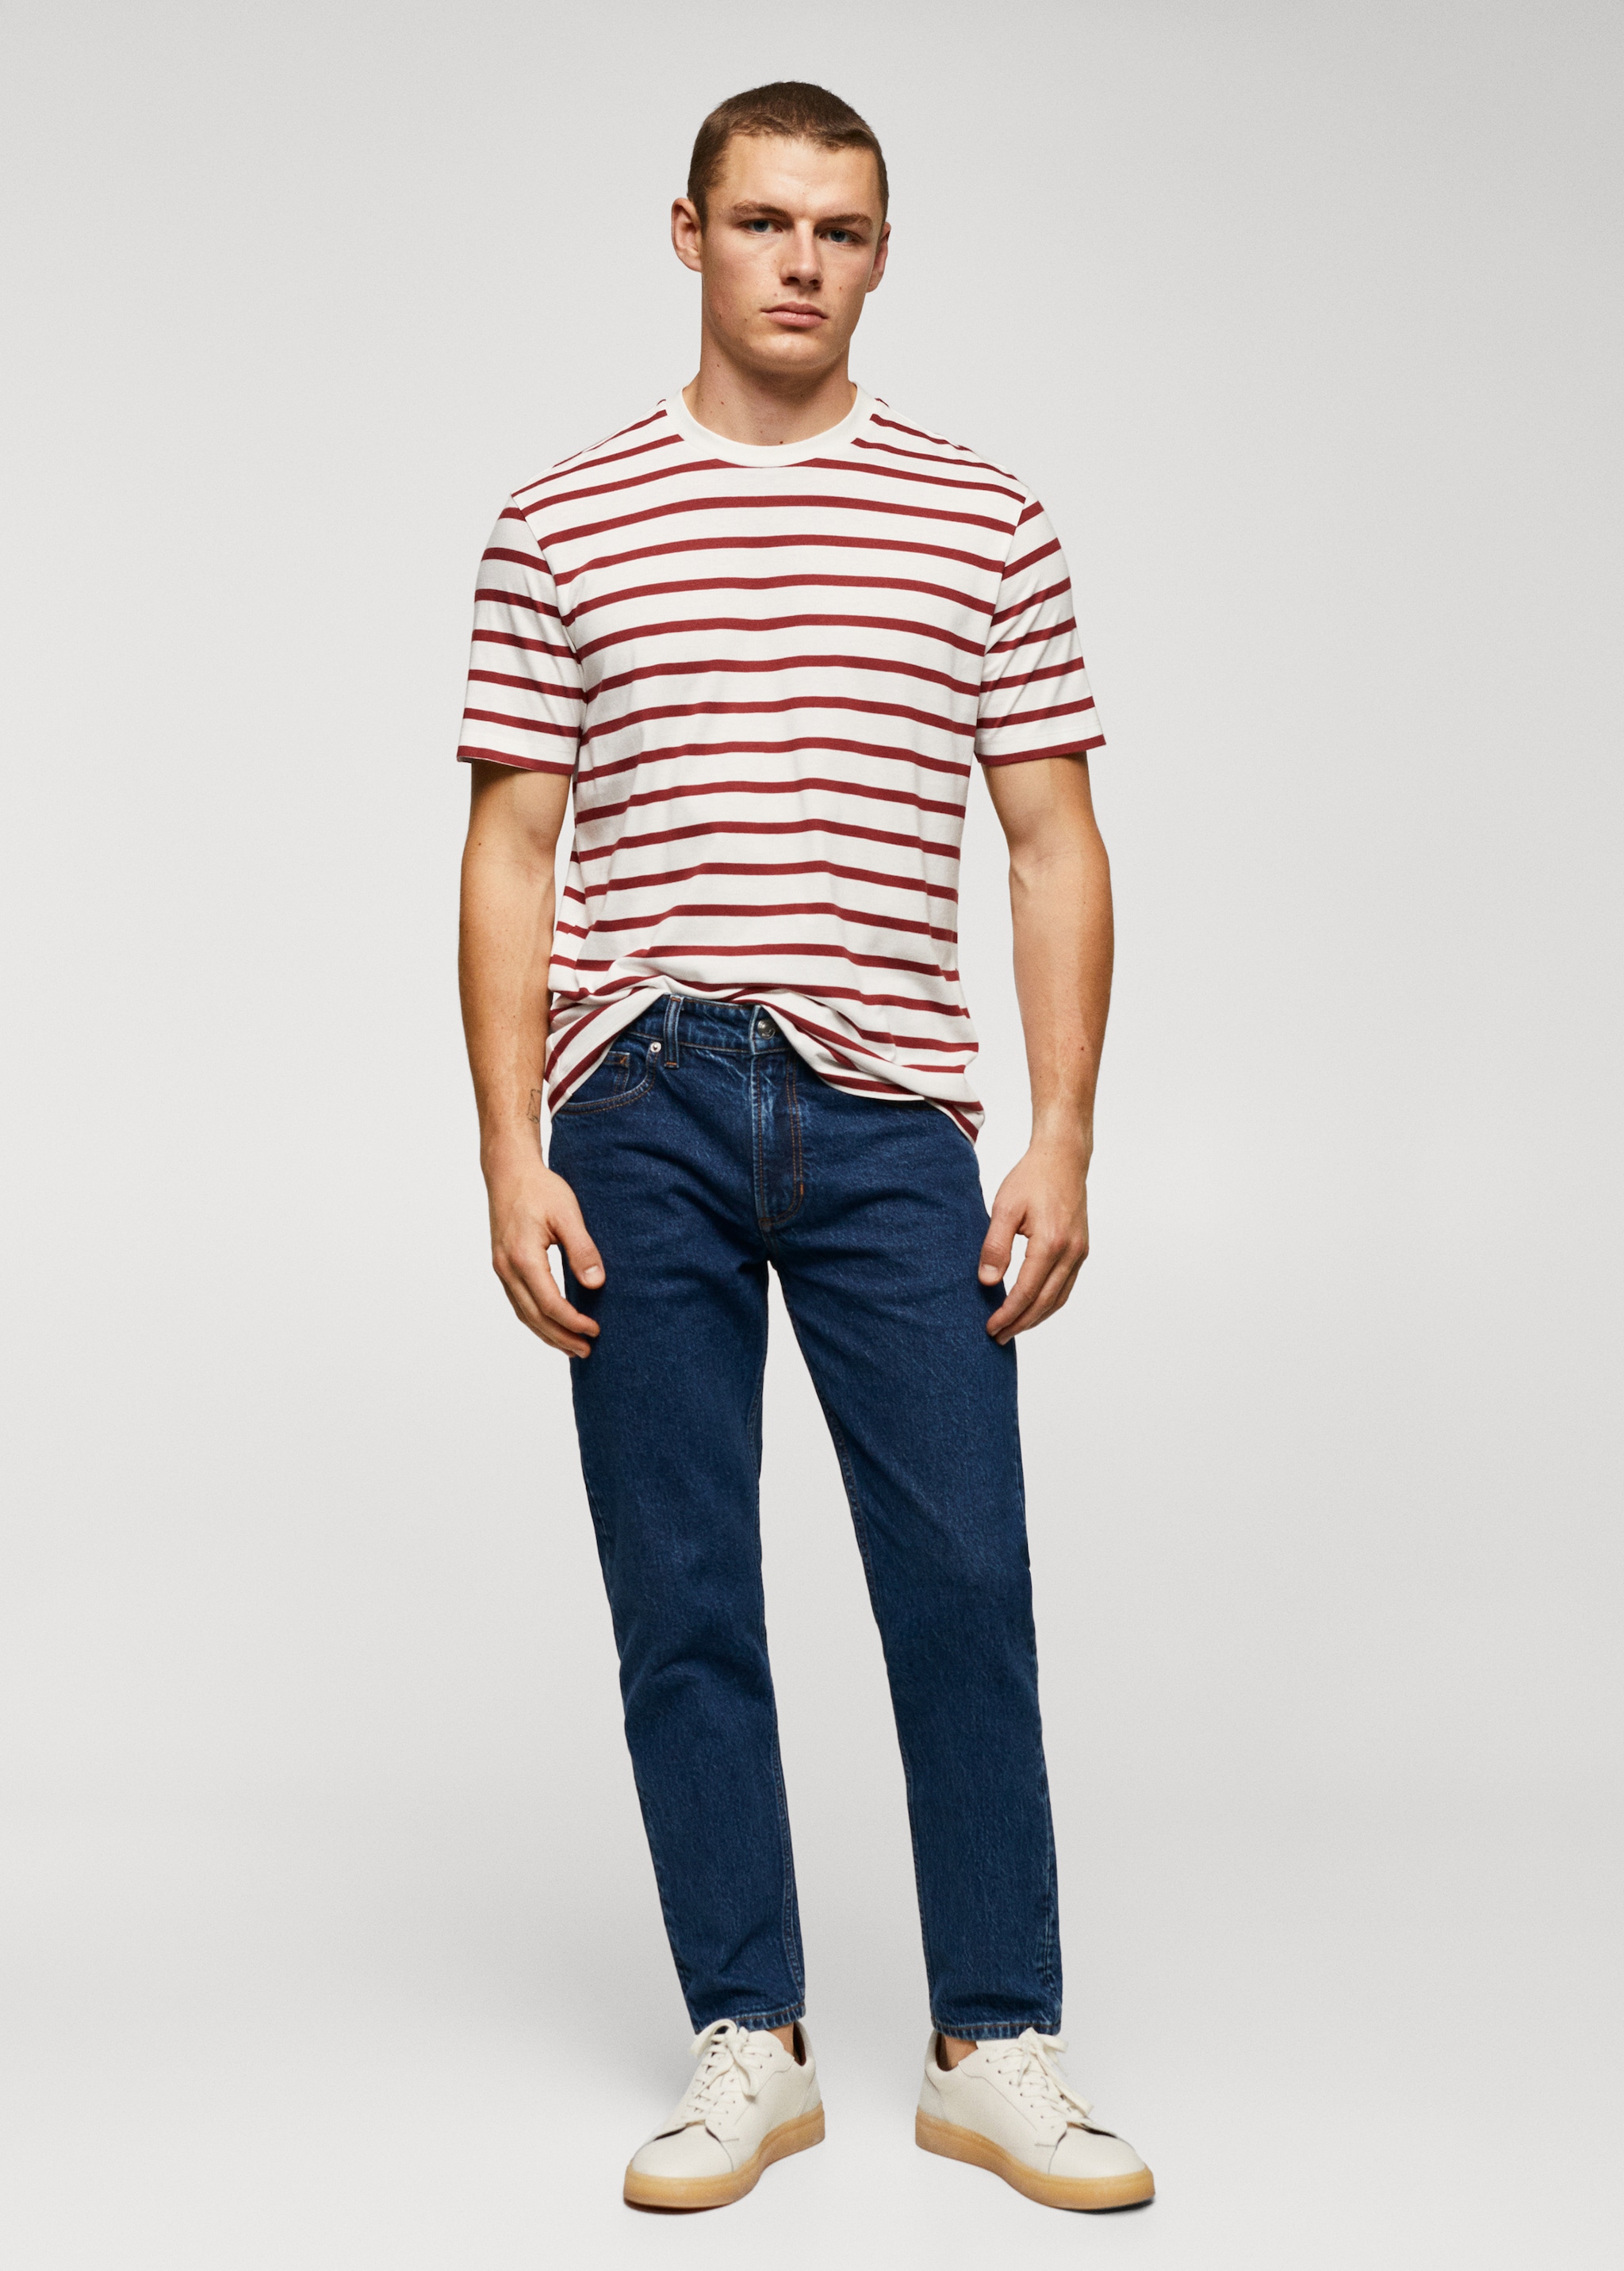 Cotton-modal striped t-shirt - Plan general